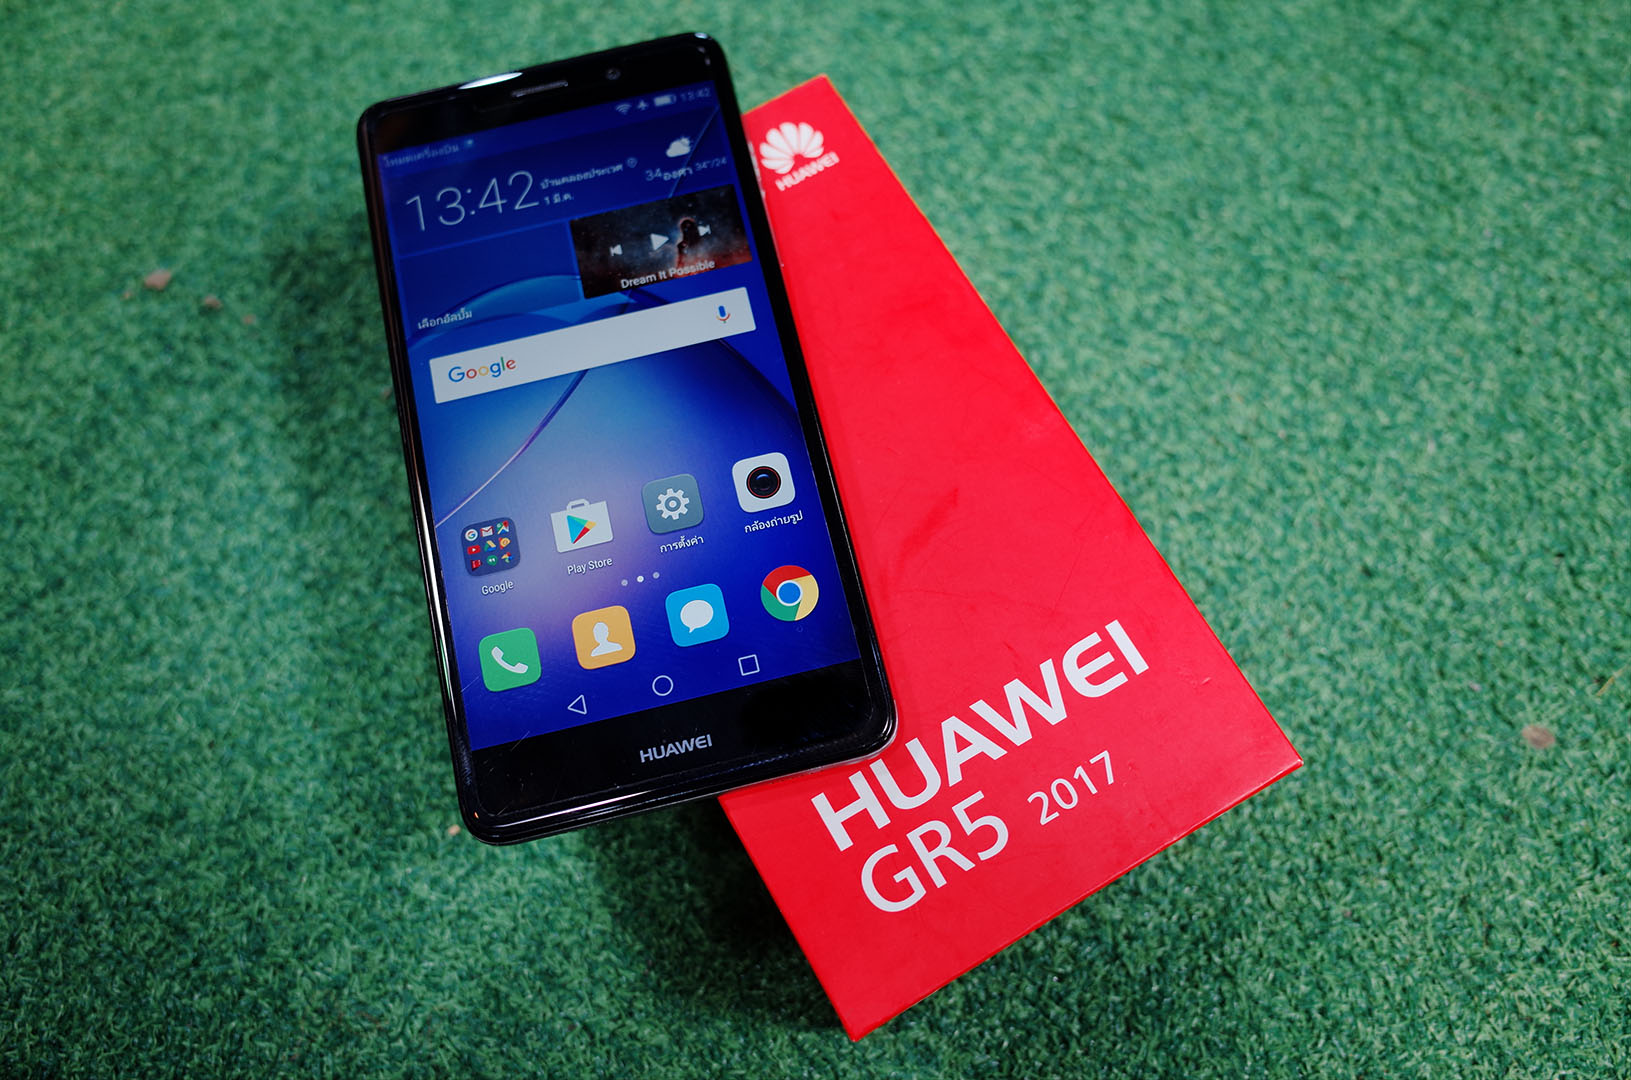 รีวิว Huawei GR5 2017 มาตรฐานใหม่ของสมาร์ทโฟนราคา 8,990 บาท